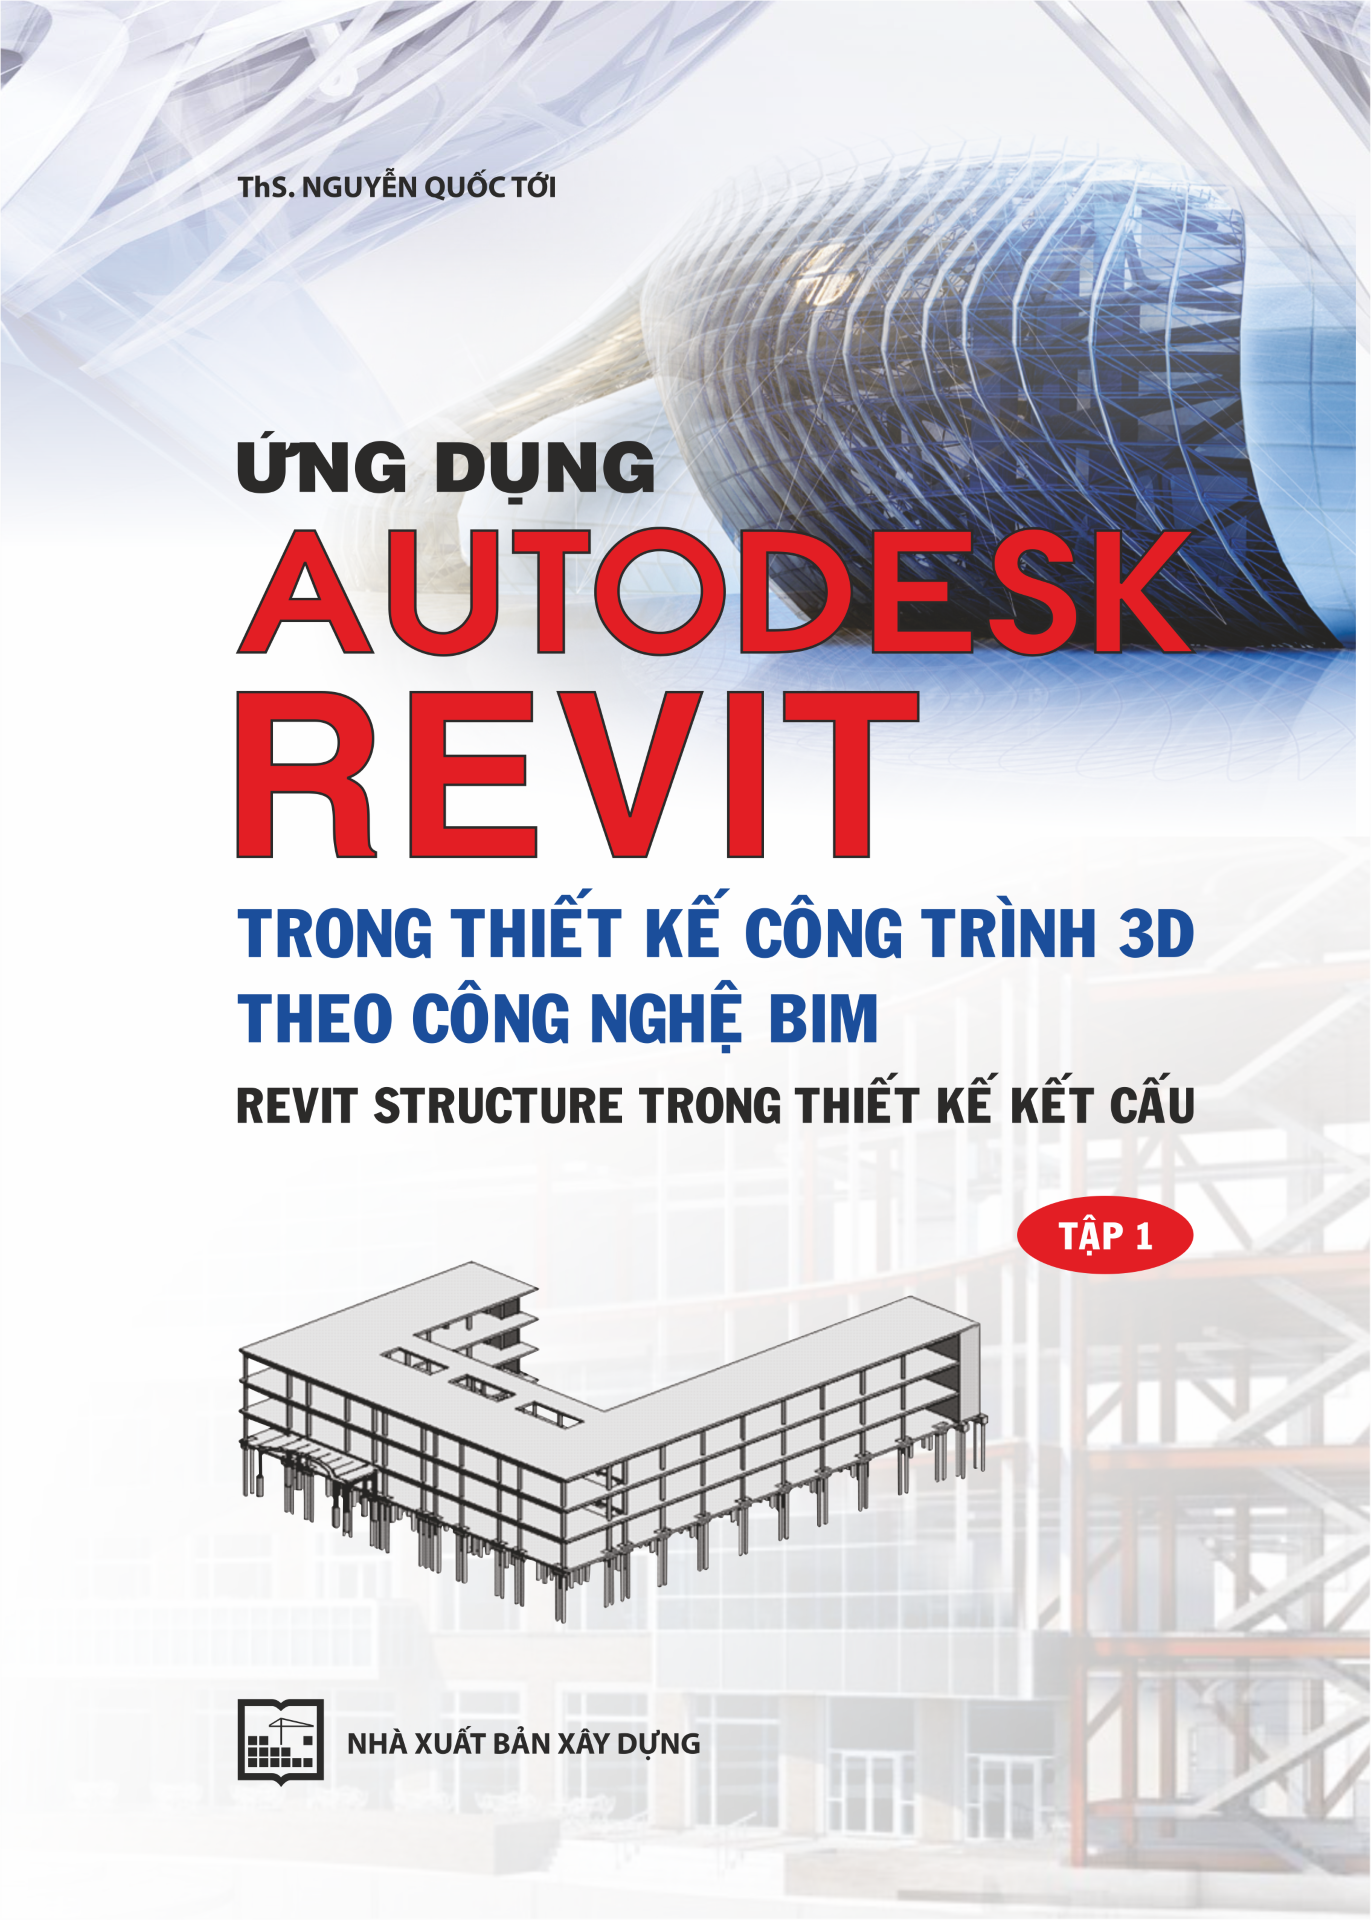 Ứng dụng AUTODESK REVIT trong thiết kế công trình 3D theo công nghệ BIM REVIT STRUCTURE trong thiết kế kết cấu - Tập 1